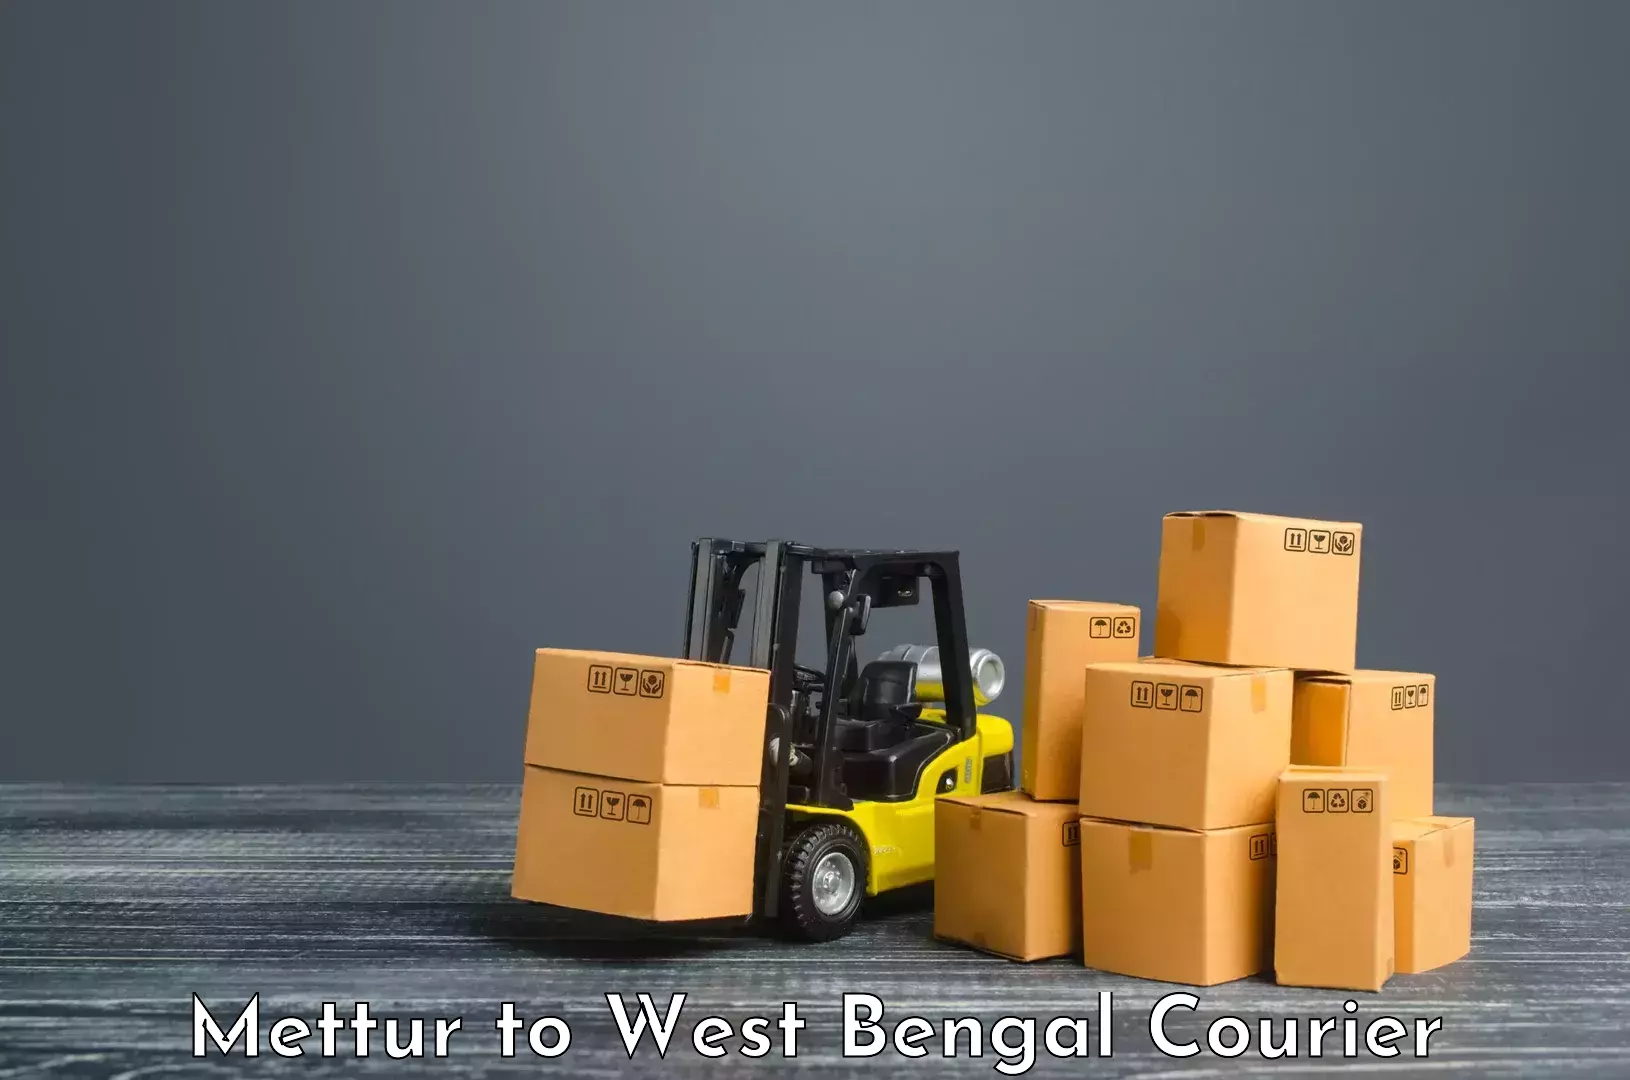 Express logistics providers Mettur to Birpara